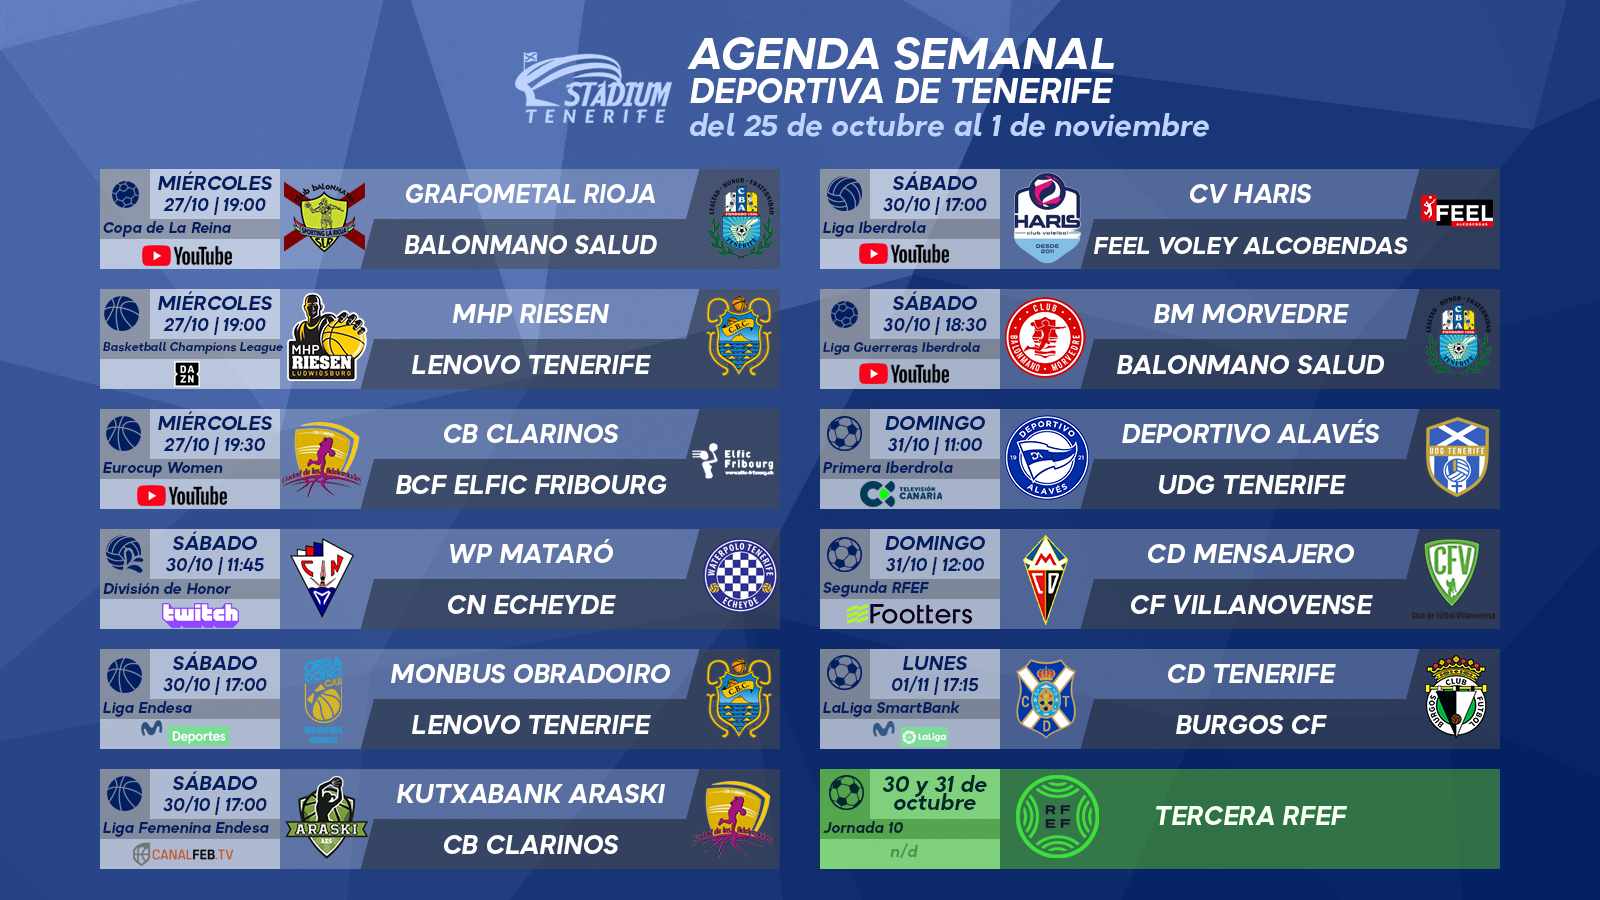 Agenda Semanal Deportiva de Tenerife (25 de octubre al 1 de noviembre de 2021)